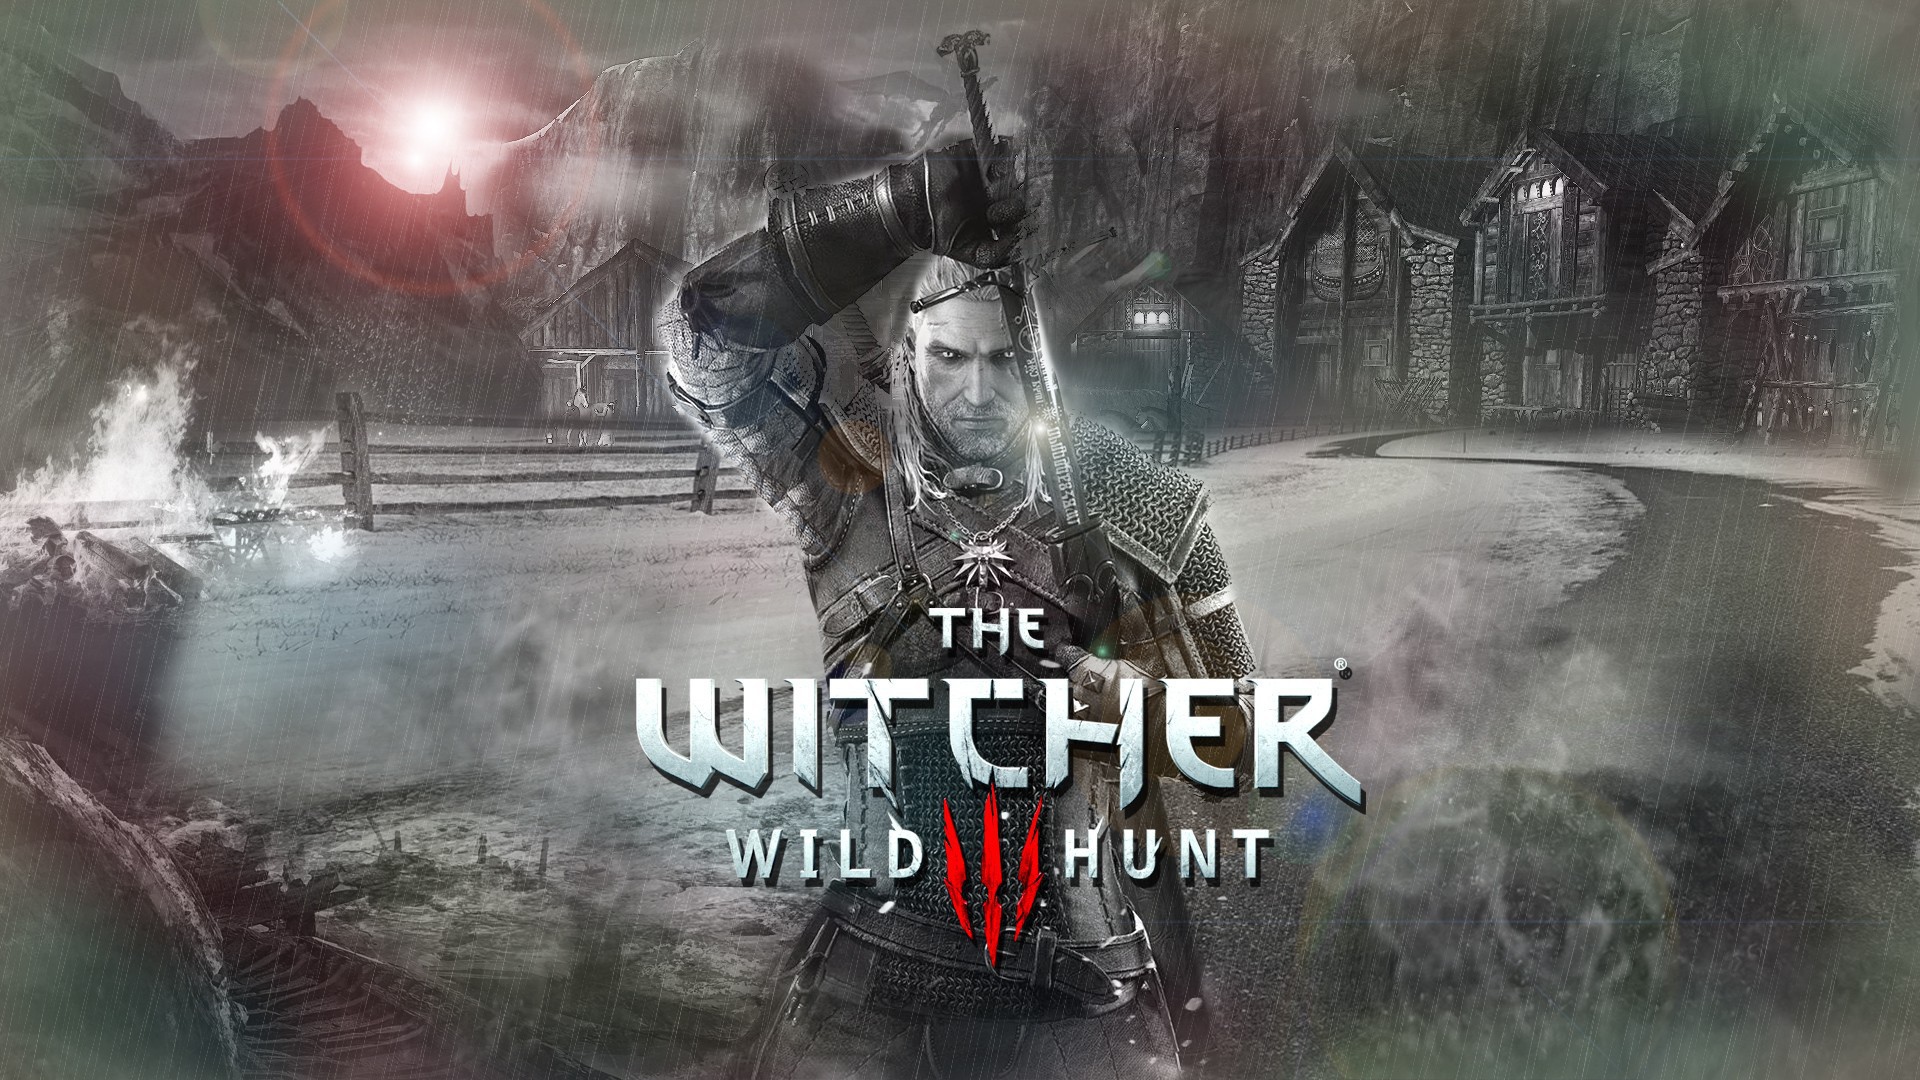 Геральд на постере игры The Witcher 3 Wild Hunt